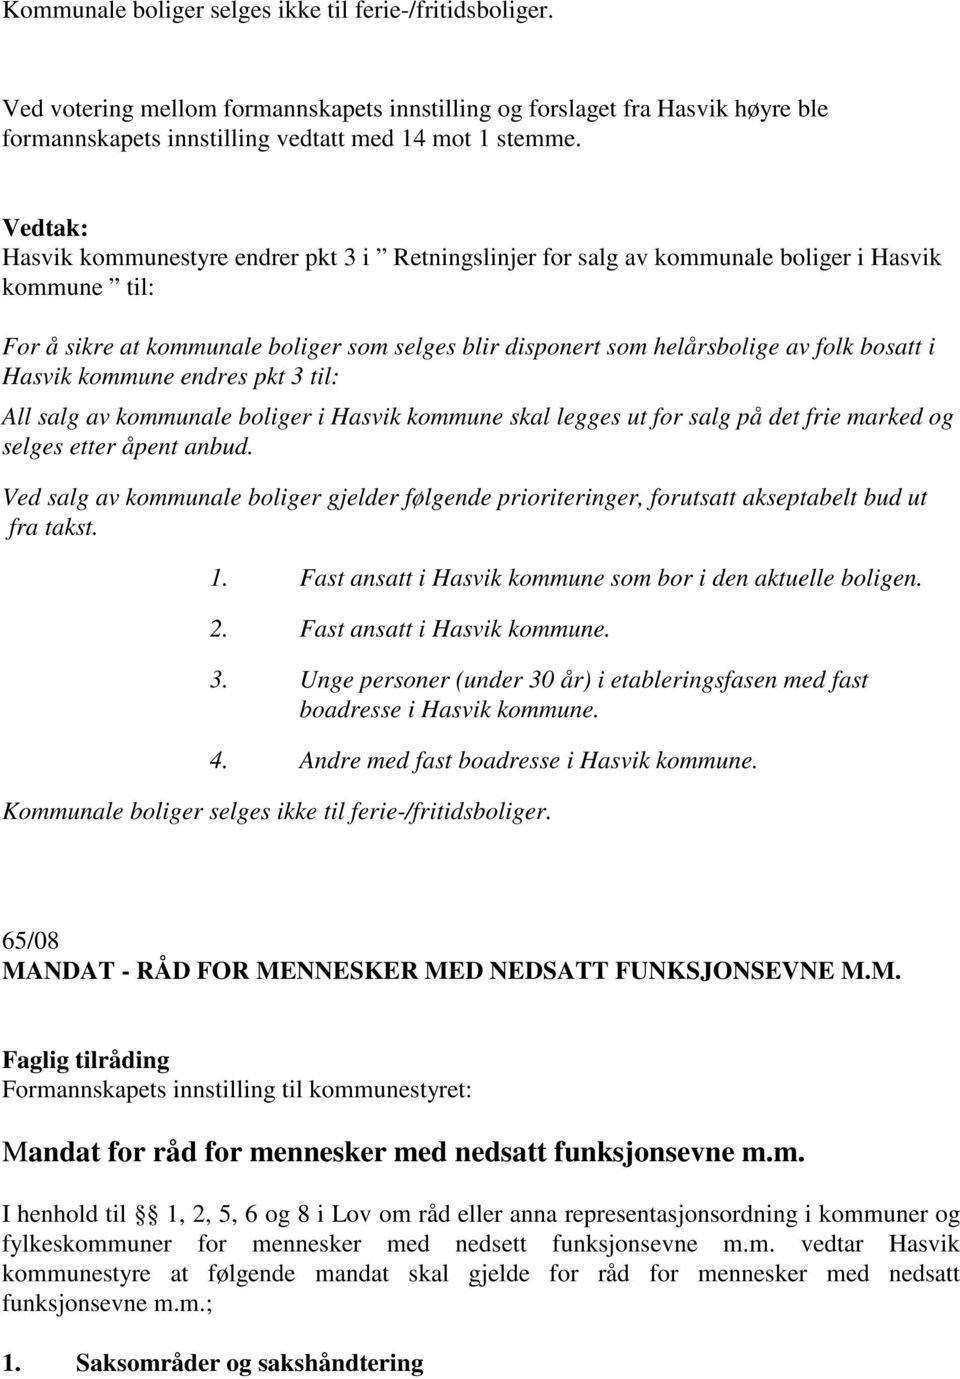 bosatt i Hasvik kommune endres pkt 3 til: All salg av kommunale boliger i Hasvik kommune skal legges ut for salg på det frie marked og selges etter åpent anbud.